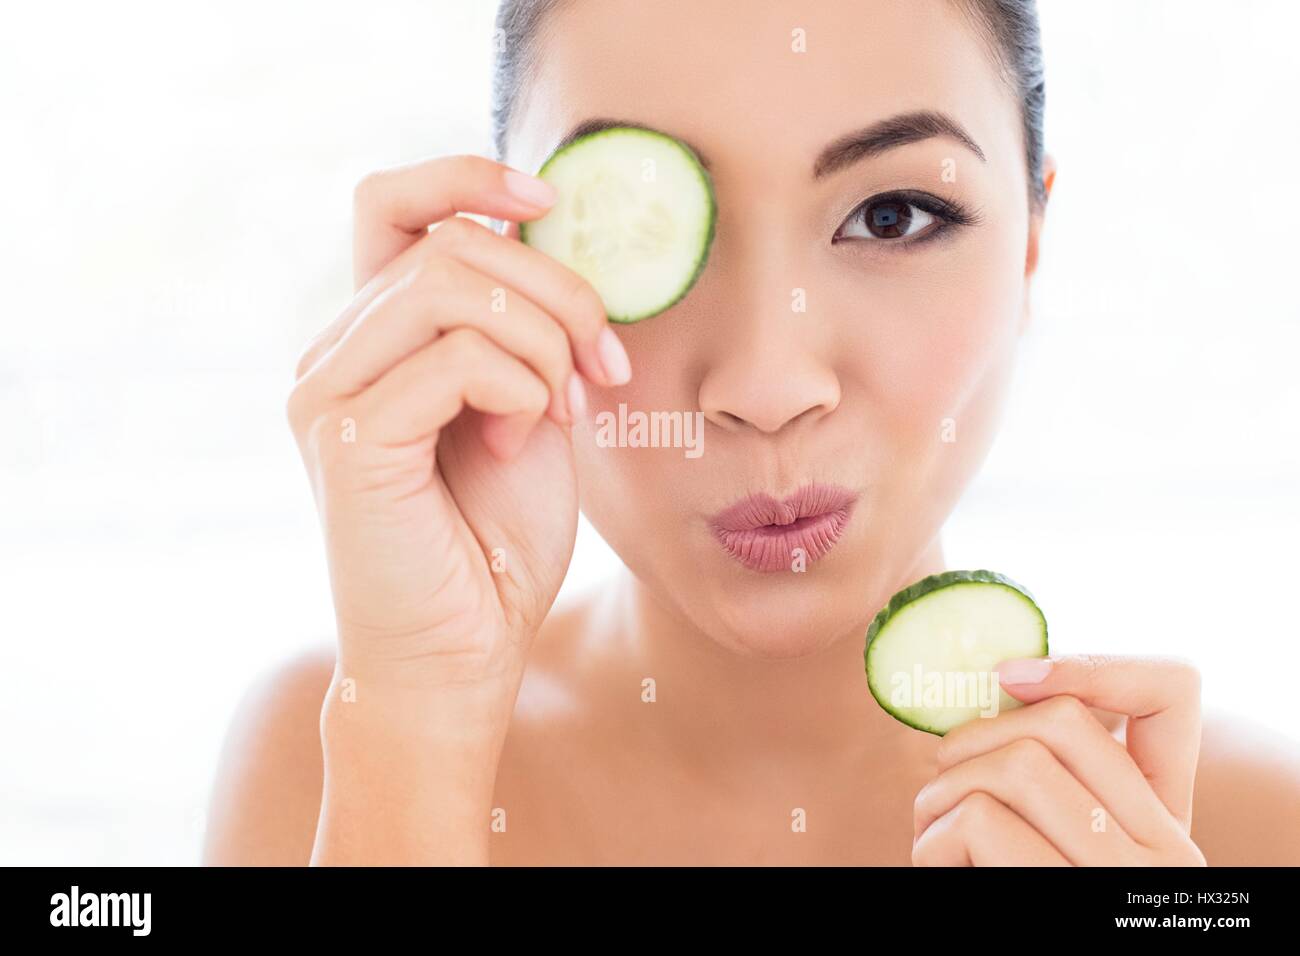 -MODELL VERÖFFENTLICHT. Junge asiatische Frau mit Gurke vor Auge, Porträt. Stockfoto